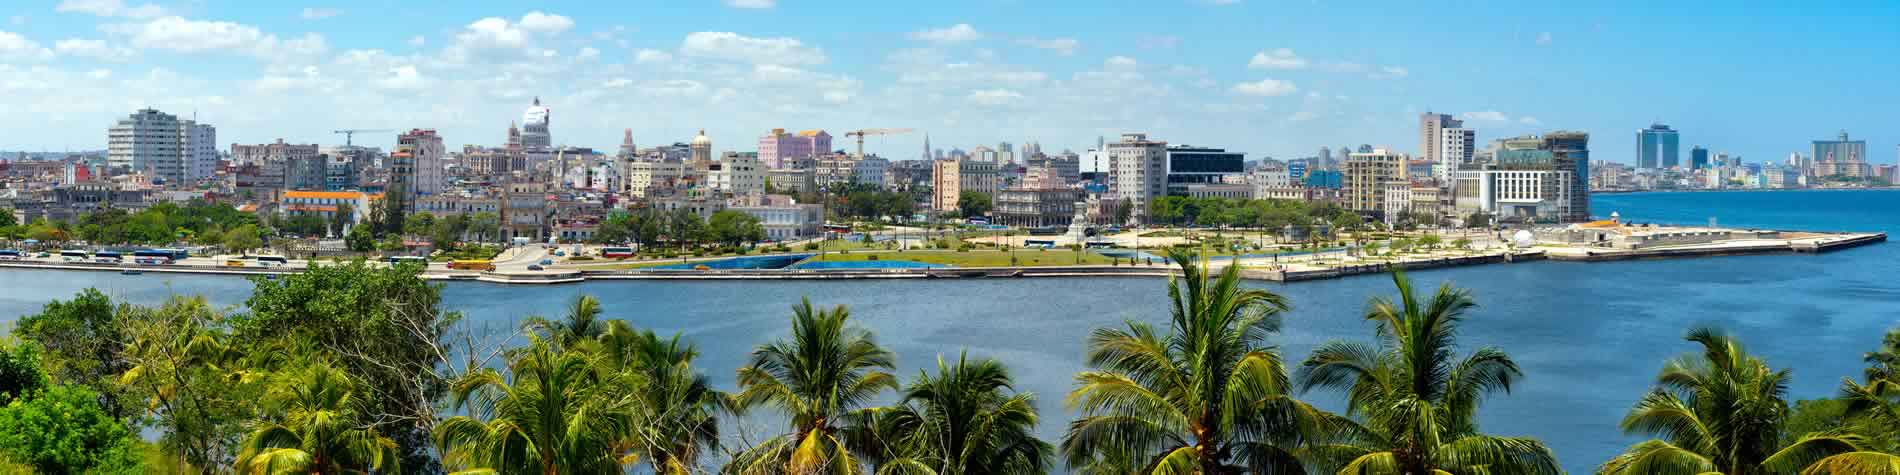 Vista de la ciudad Habana desde la bahía